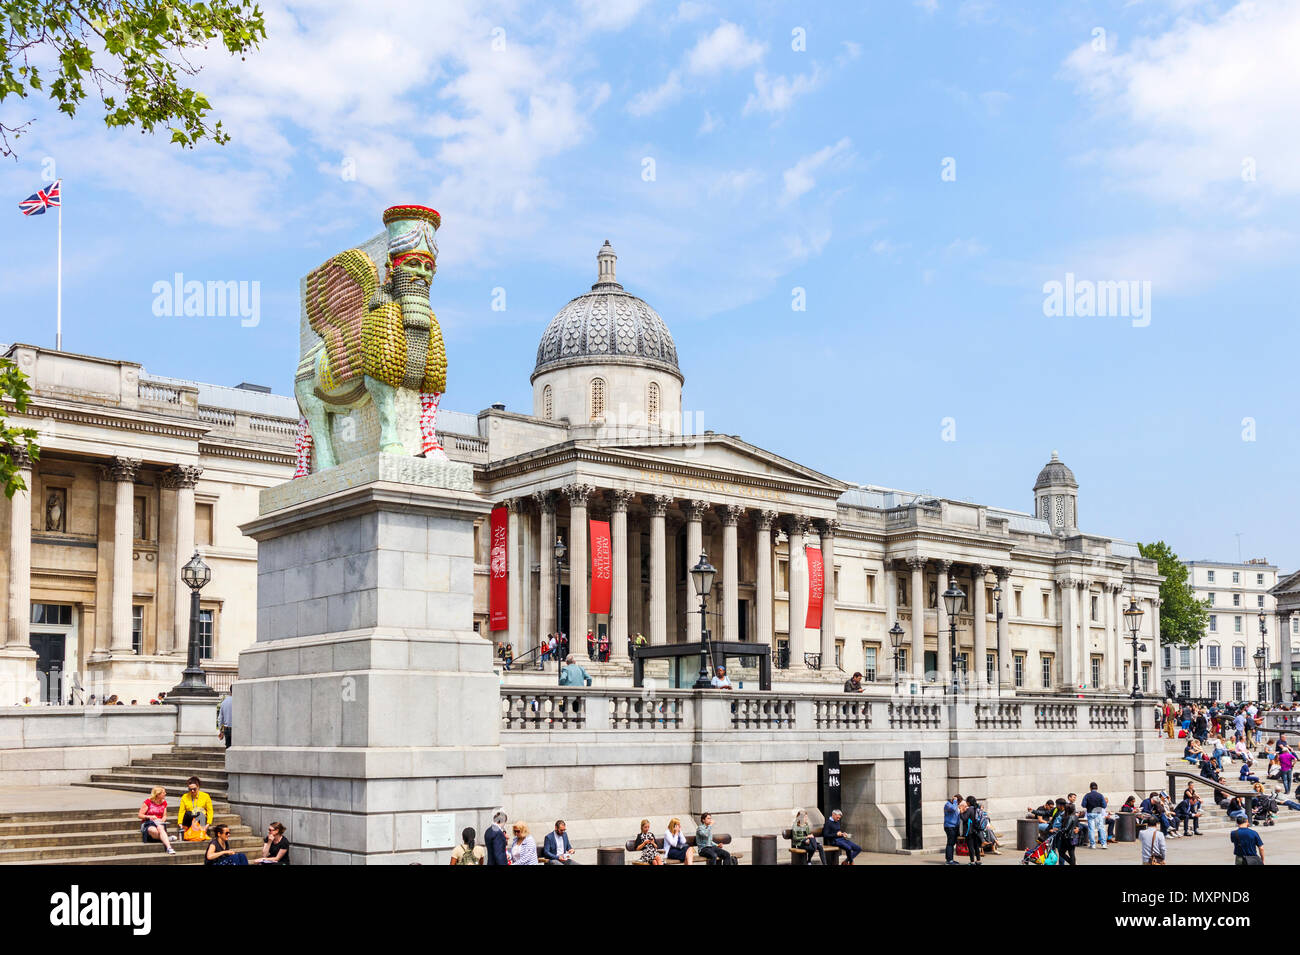 Assyrische Lamassu Statue, die unsichtbaren Feind nicht existieren sollte, Fourth Plinth, den Trafalgar Square, die National Gallery, Westminster, London Stockfoto